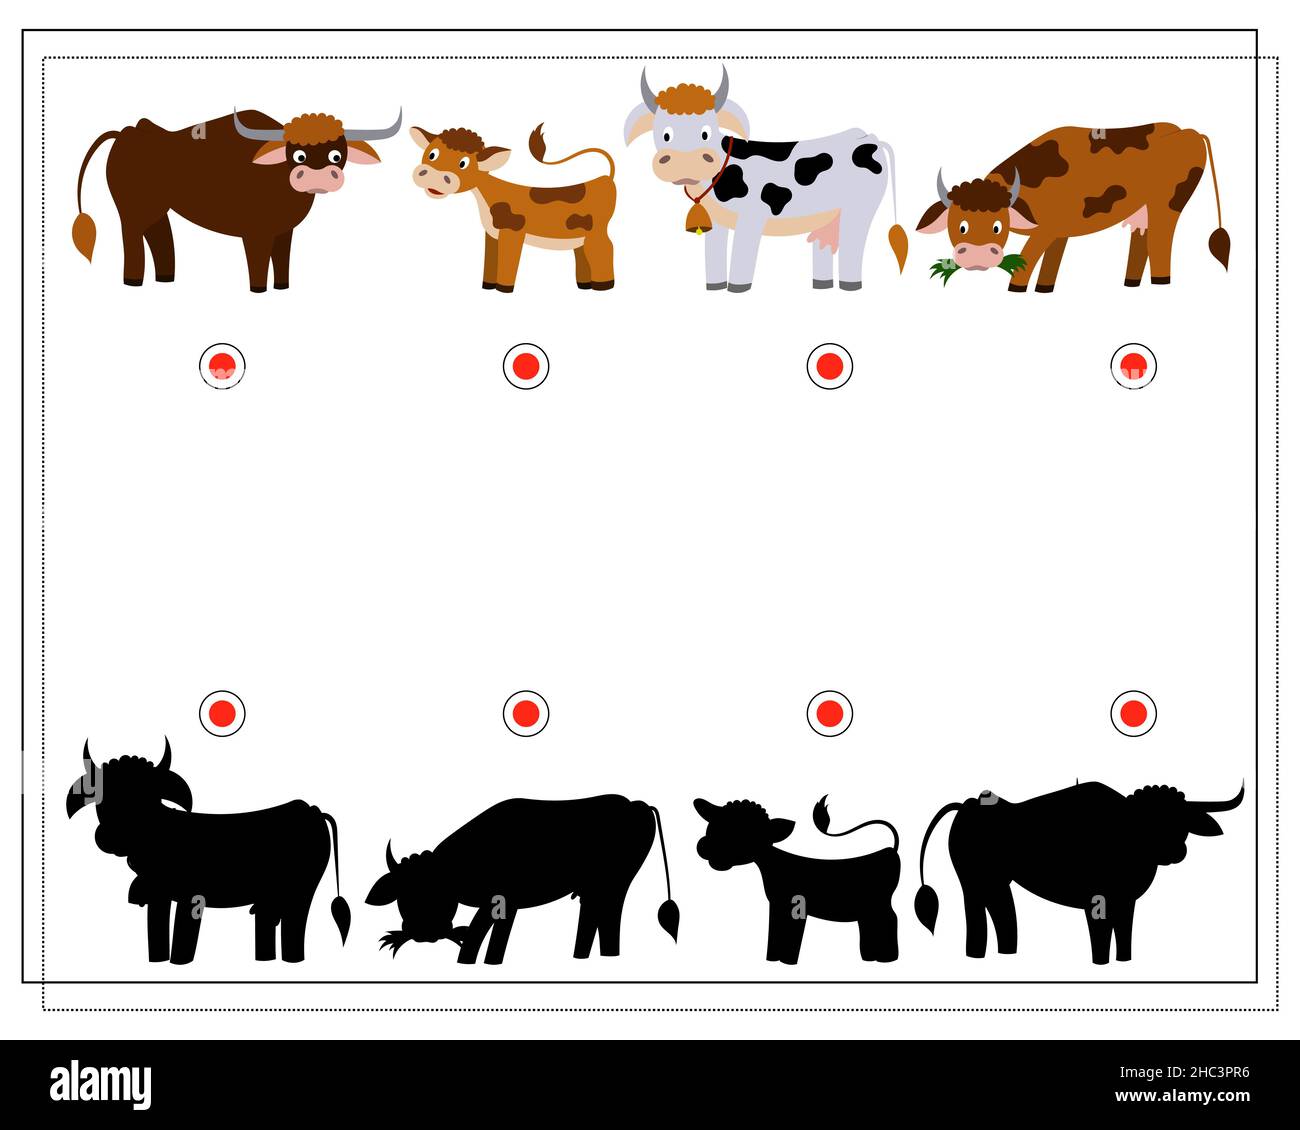 Rompecabezas de animales vaca e imágenes de alta - Alamy